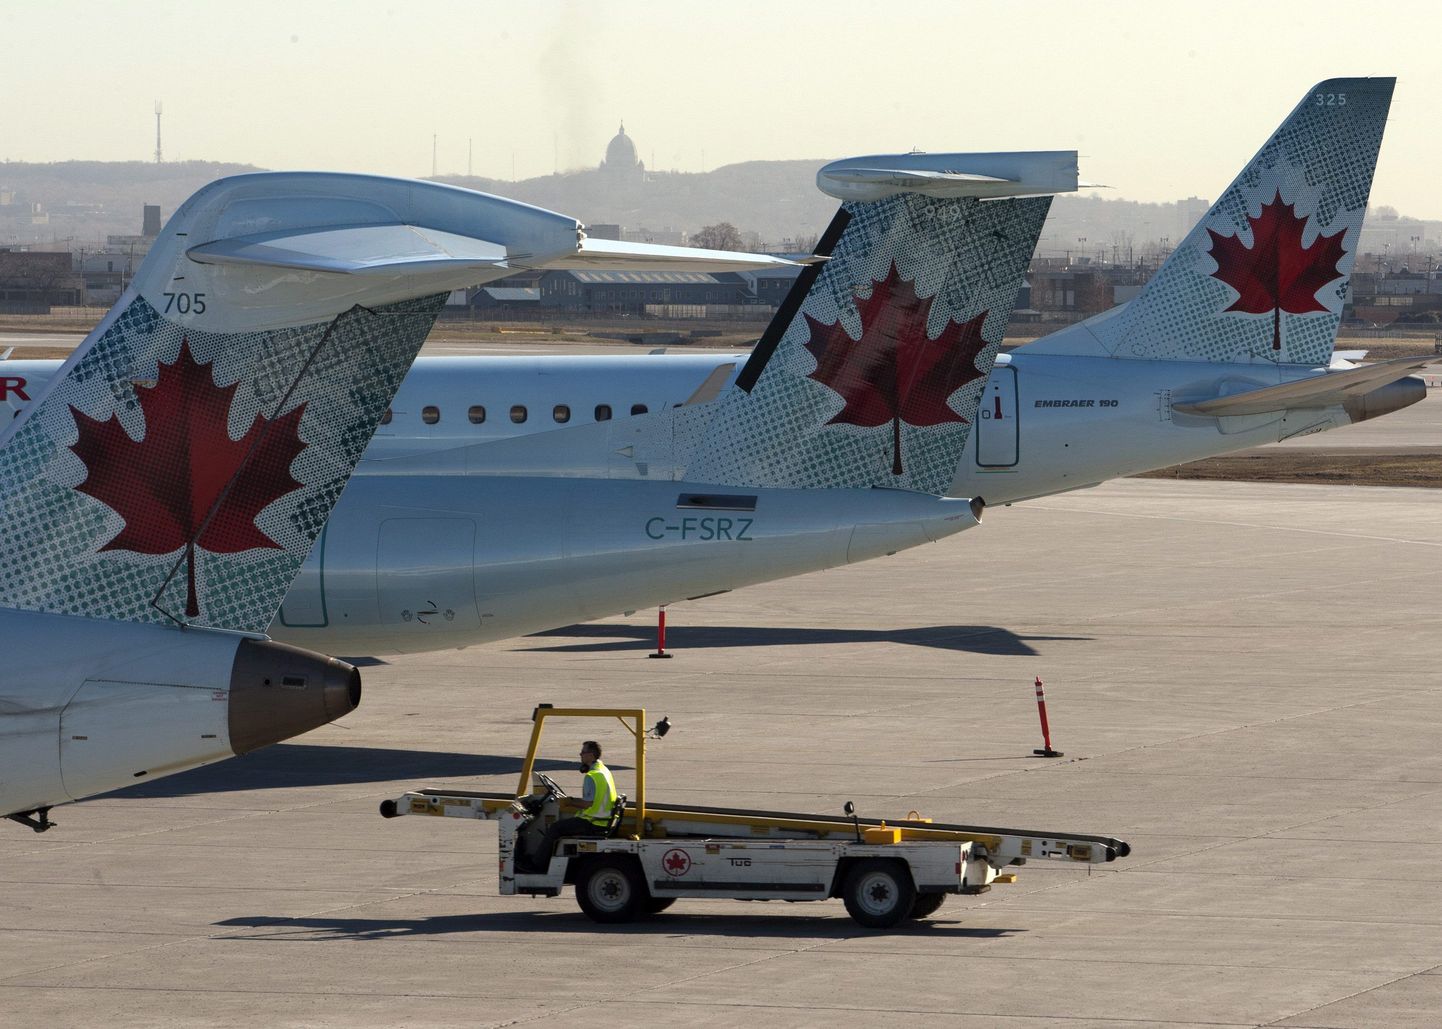 Möödunud aastal Põhja-Atlandi kohal aset leidnud lennuäpardus tekkis Air Canada piloodi vea tõttu